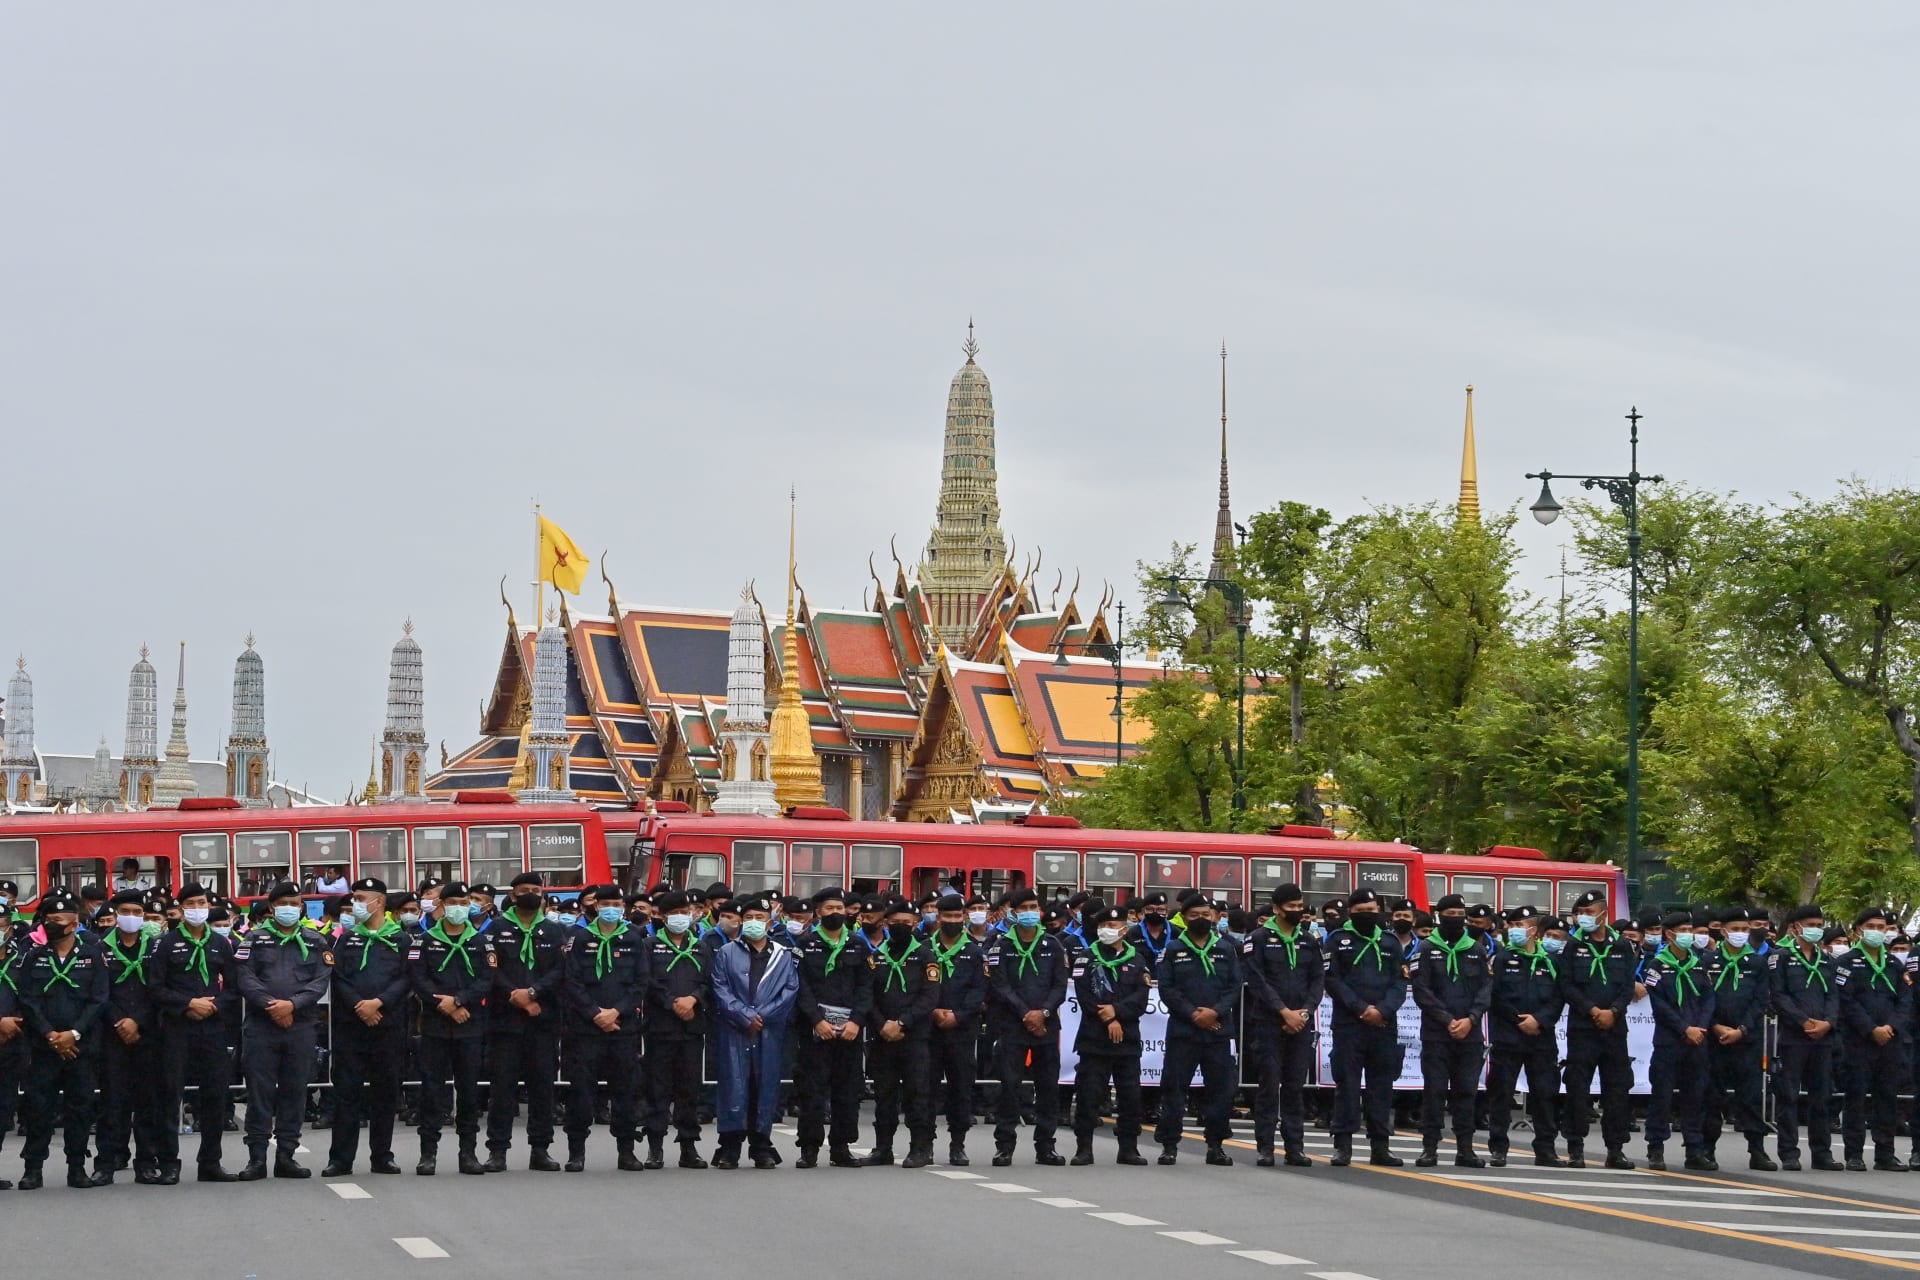 متظاهرو تايلاند يعلنون "النصر" في مسيرات إصلاح الملكية بعد تسليم مطالبهم للسلطات